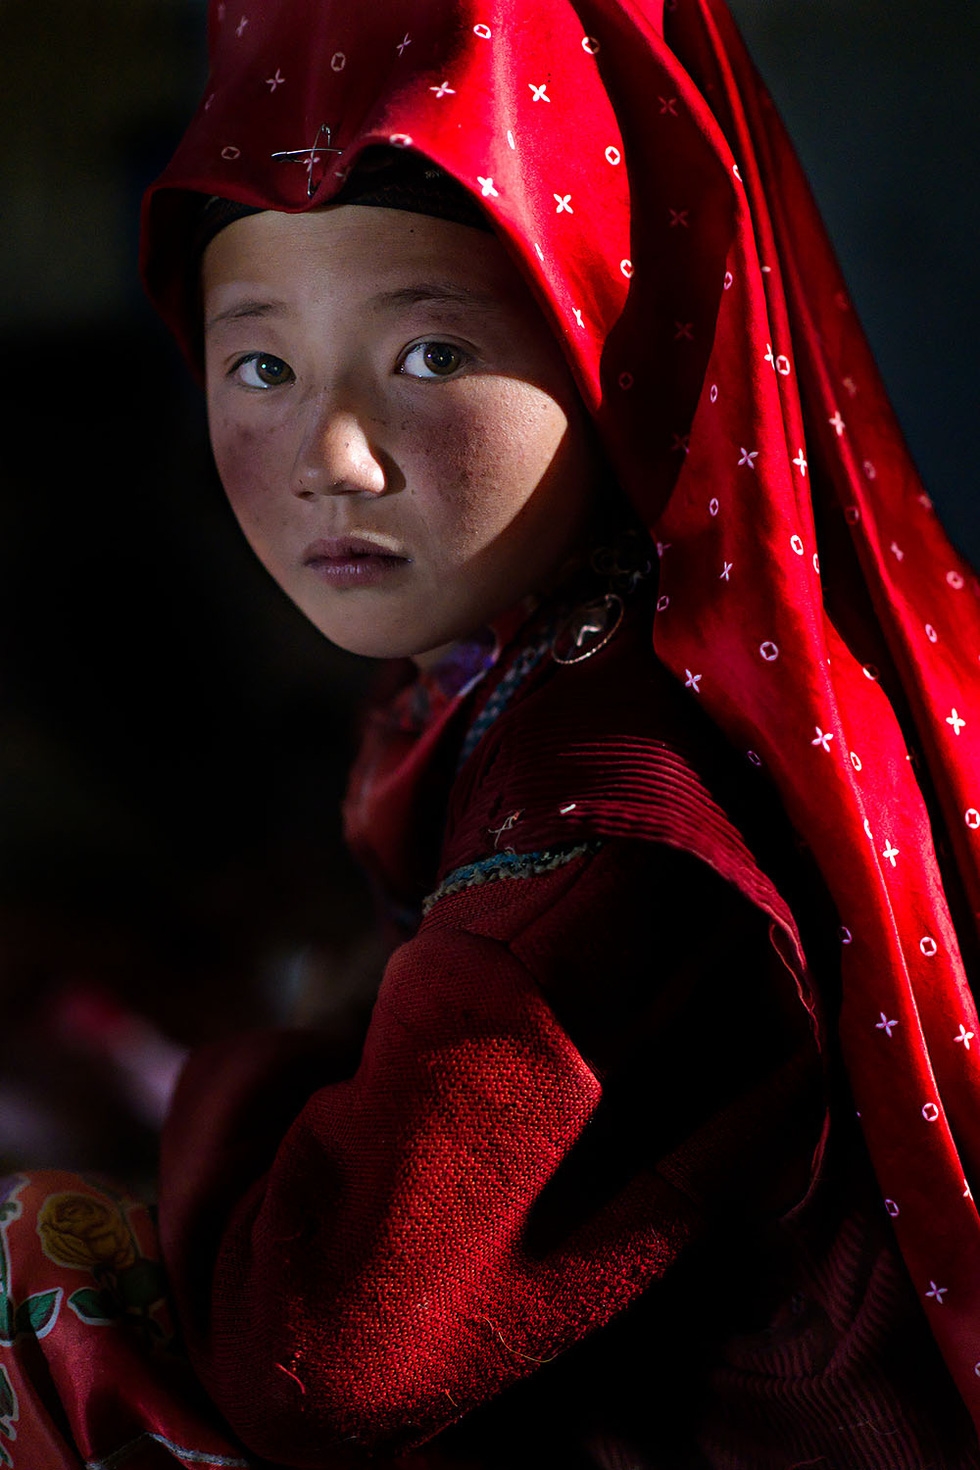 Cô gái đội khăn trong bộ ảnh "My Red Pamir" của Nicola Ducati. Tác giả cho biết lần đầu tiên ông gặp những người phụ nữ mặc đồ đỏ ở vùng núi cao của Afghanistan. Ông cho biết họ "sống trong khói bụi của những sa mạc nhưng trông như những nữ hoàng" - Ảnh: Nicola Ducati/AAP